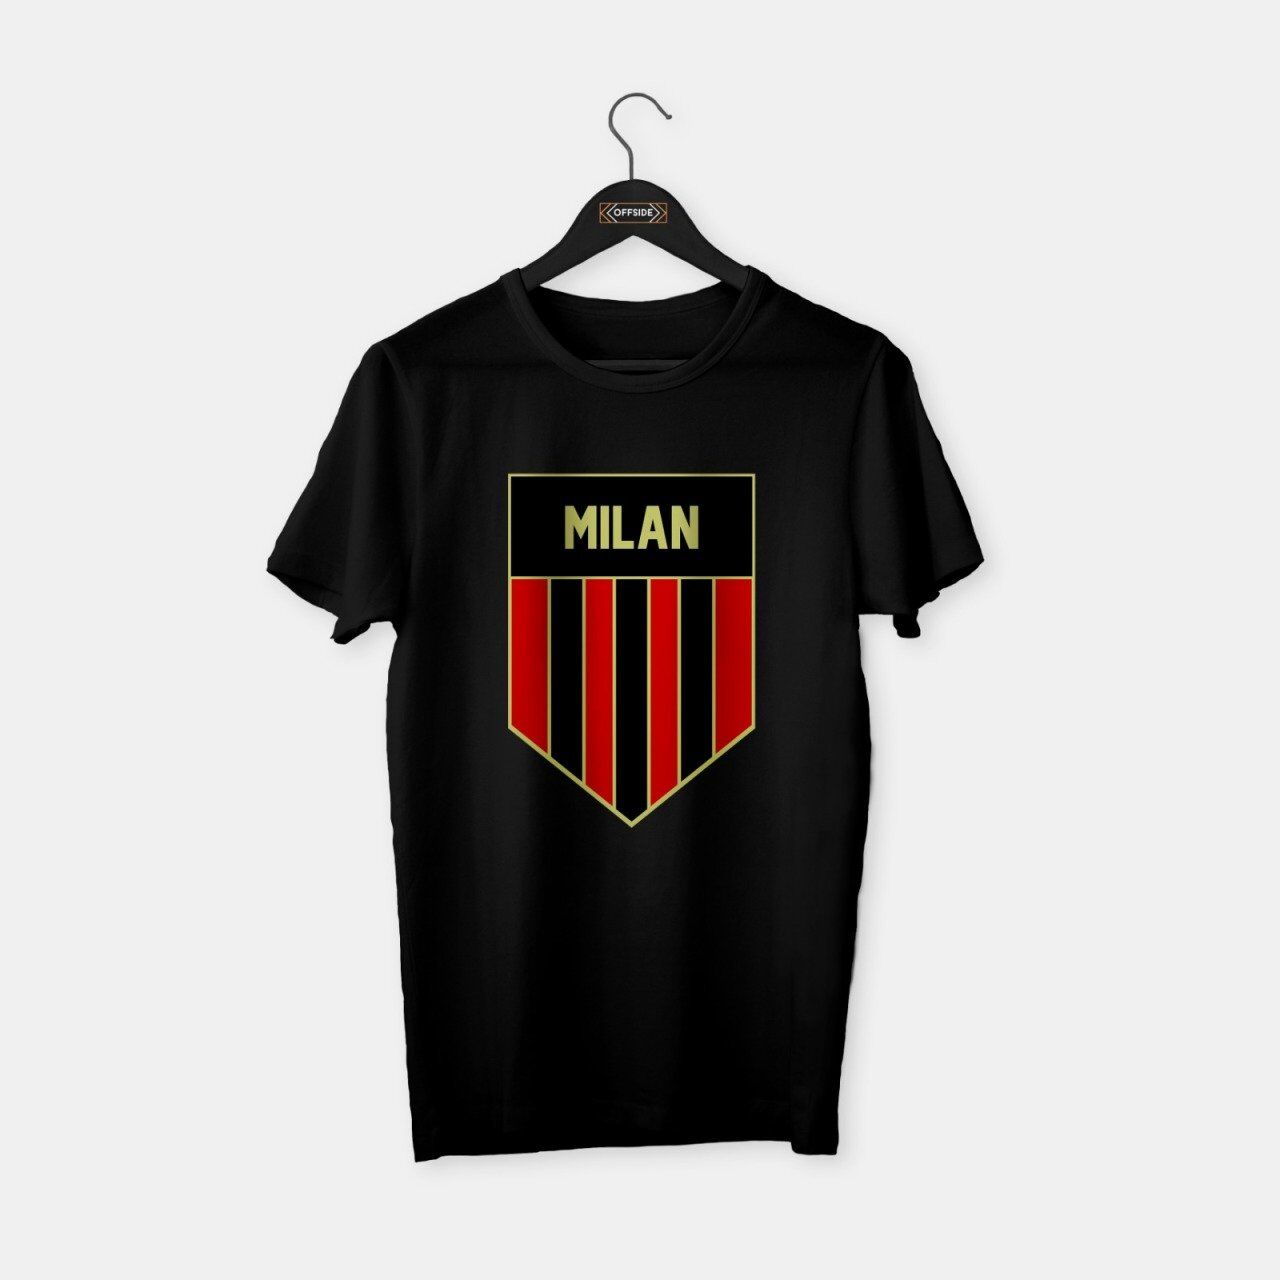 Milan - T-shirt